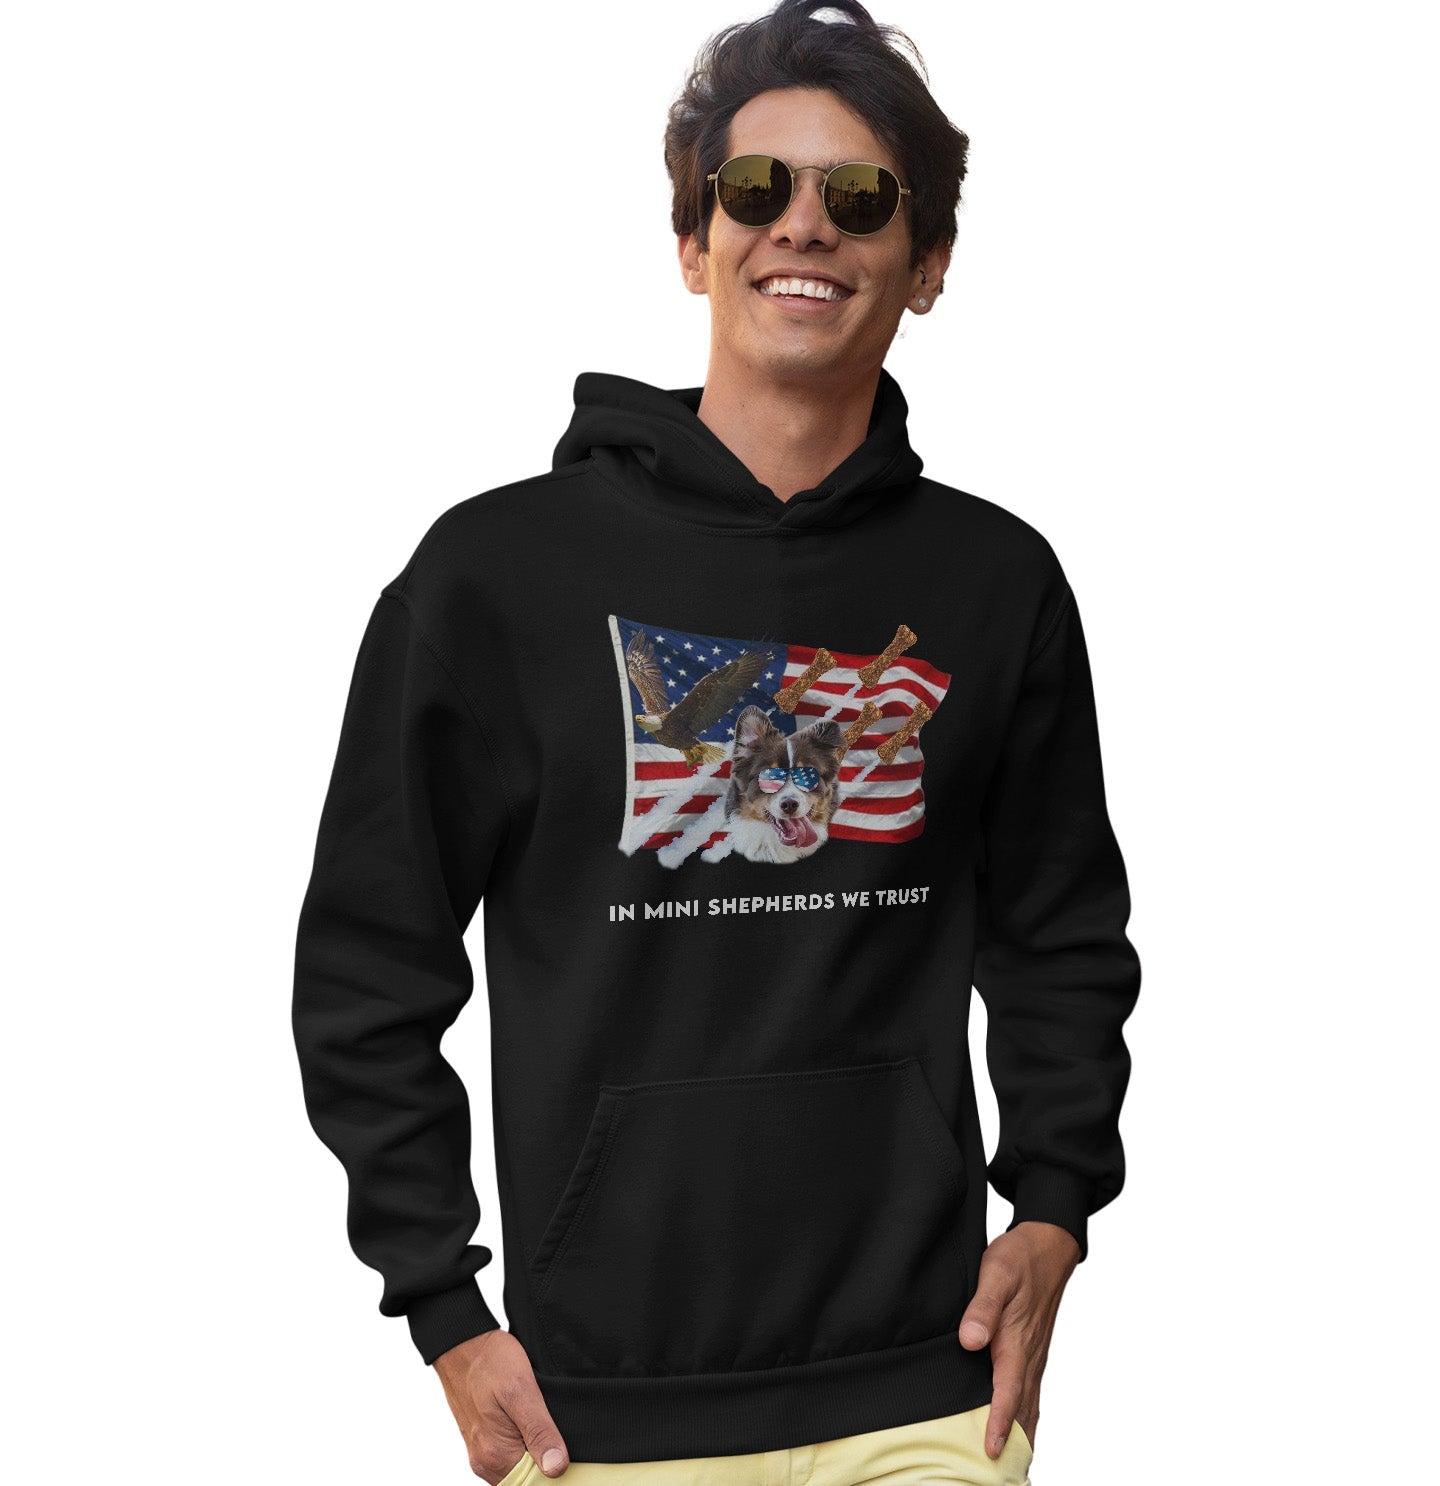 In Mini American Shepherds We Trust - Adult Unisex Hoodie Sweatshirt